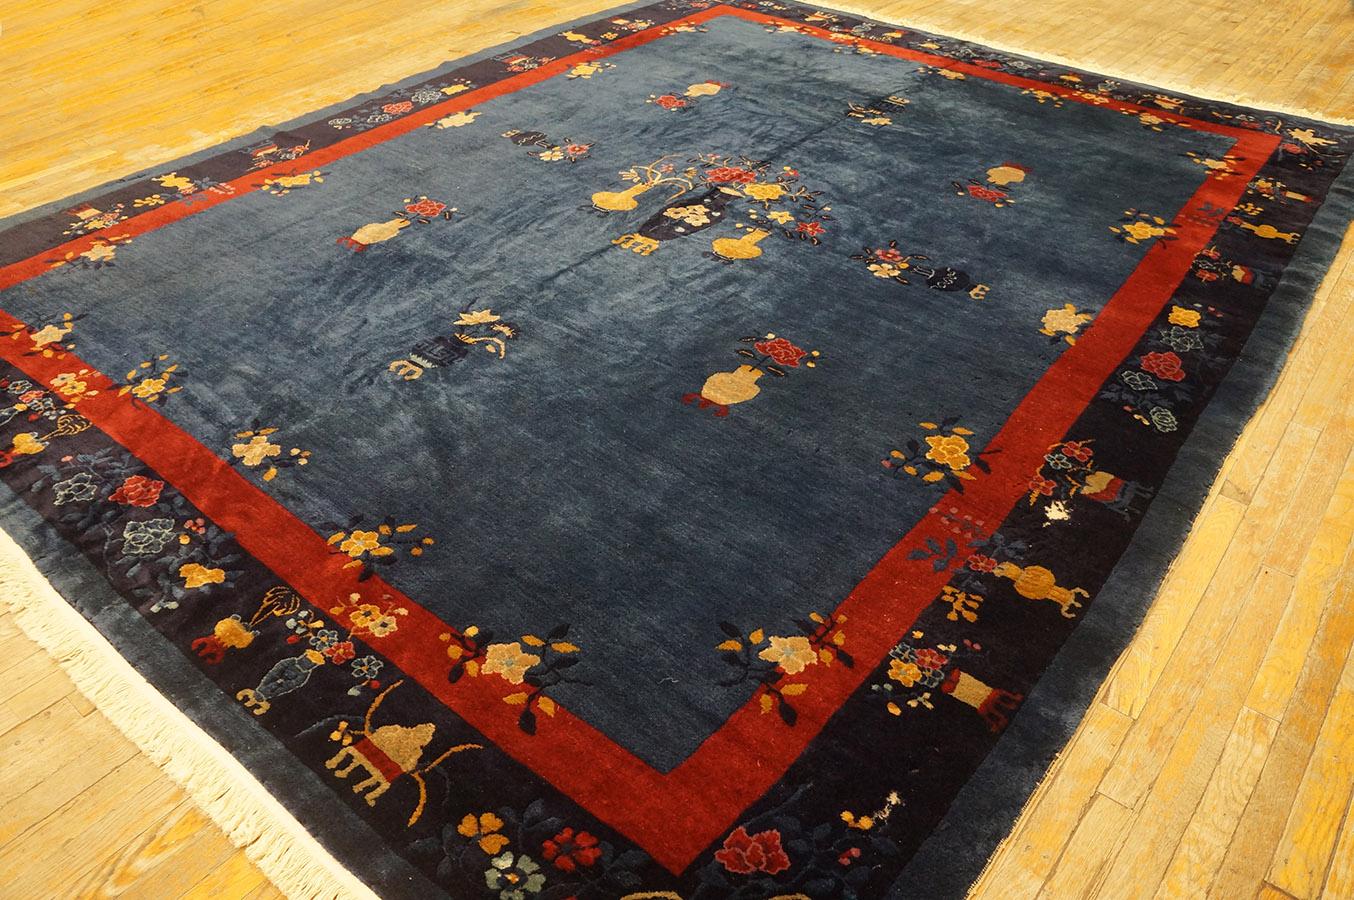 Antique Chinese Peking rug, Size: 9' 1'' x11' 6''.